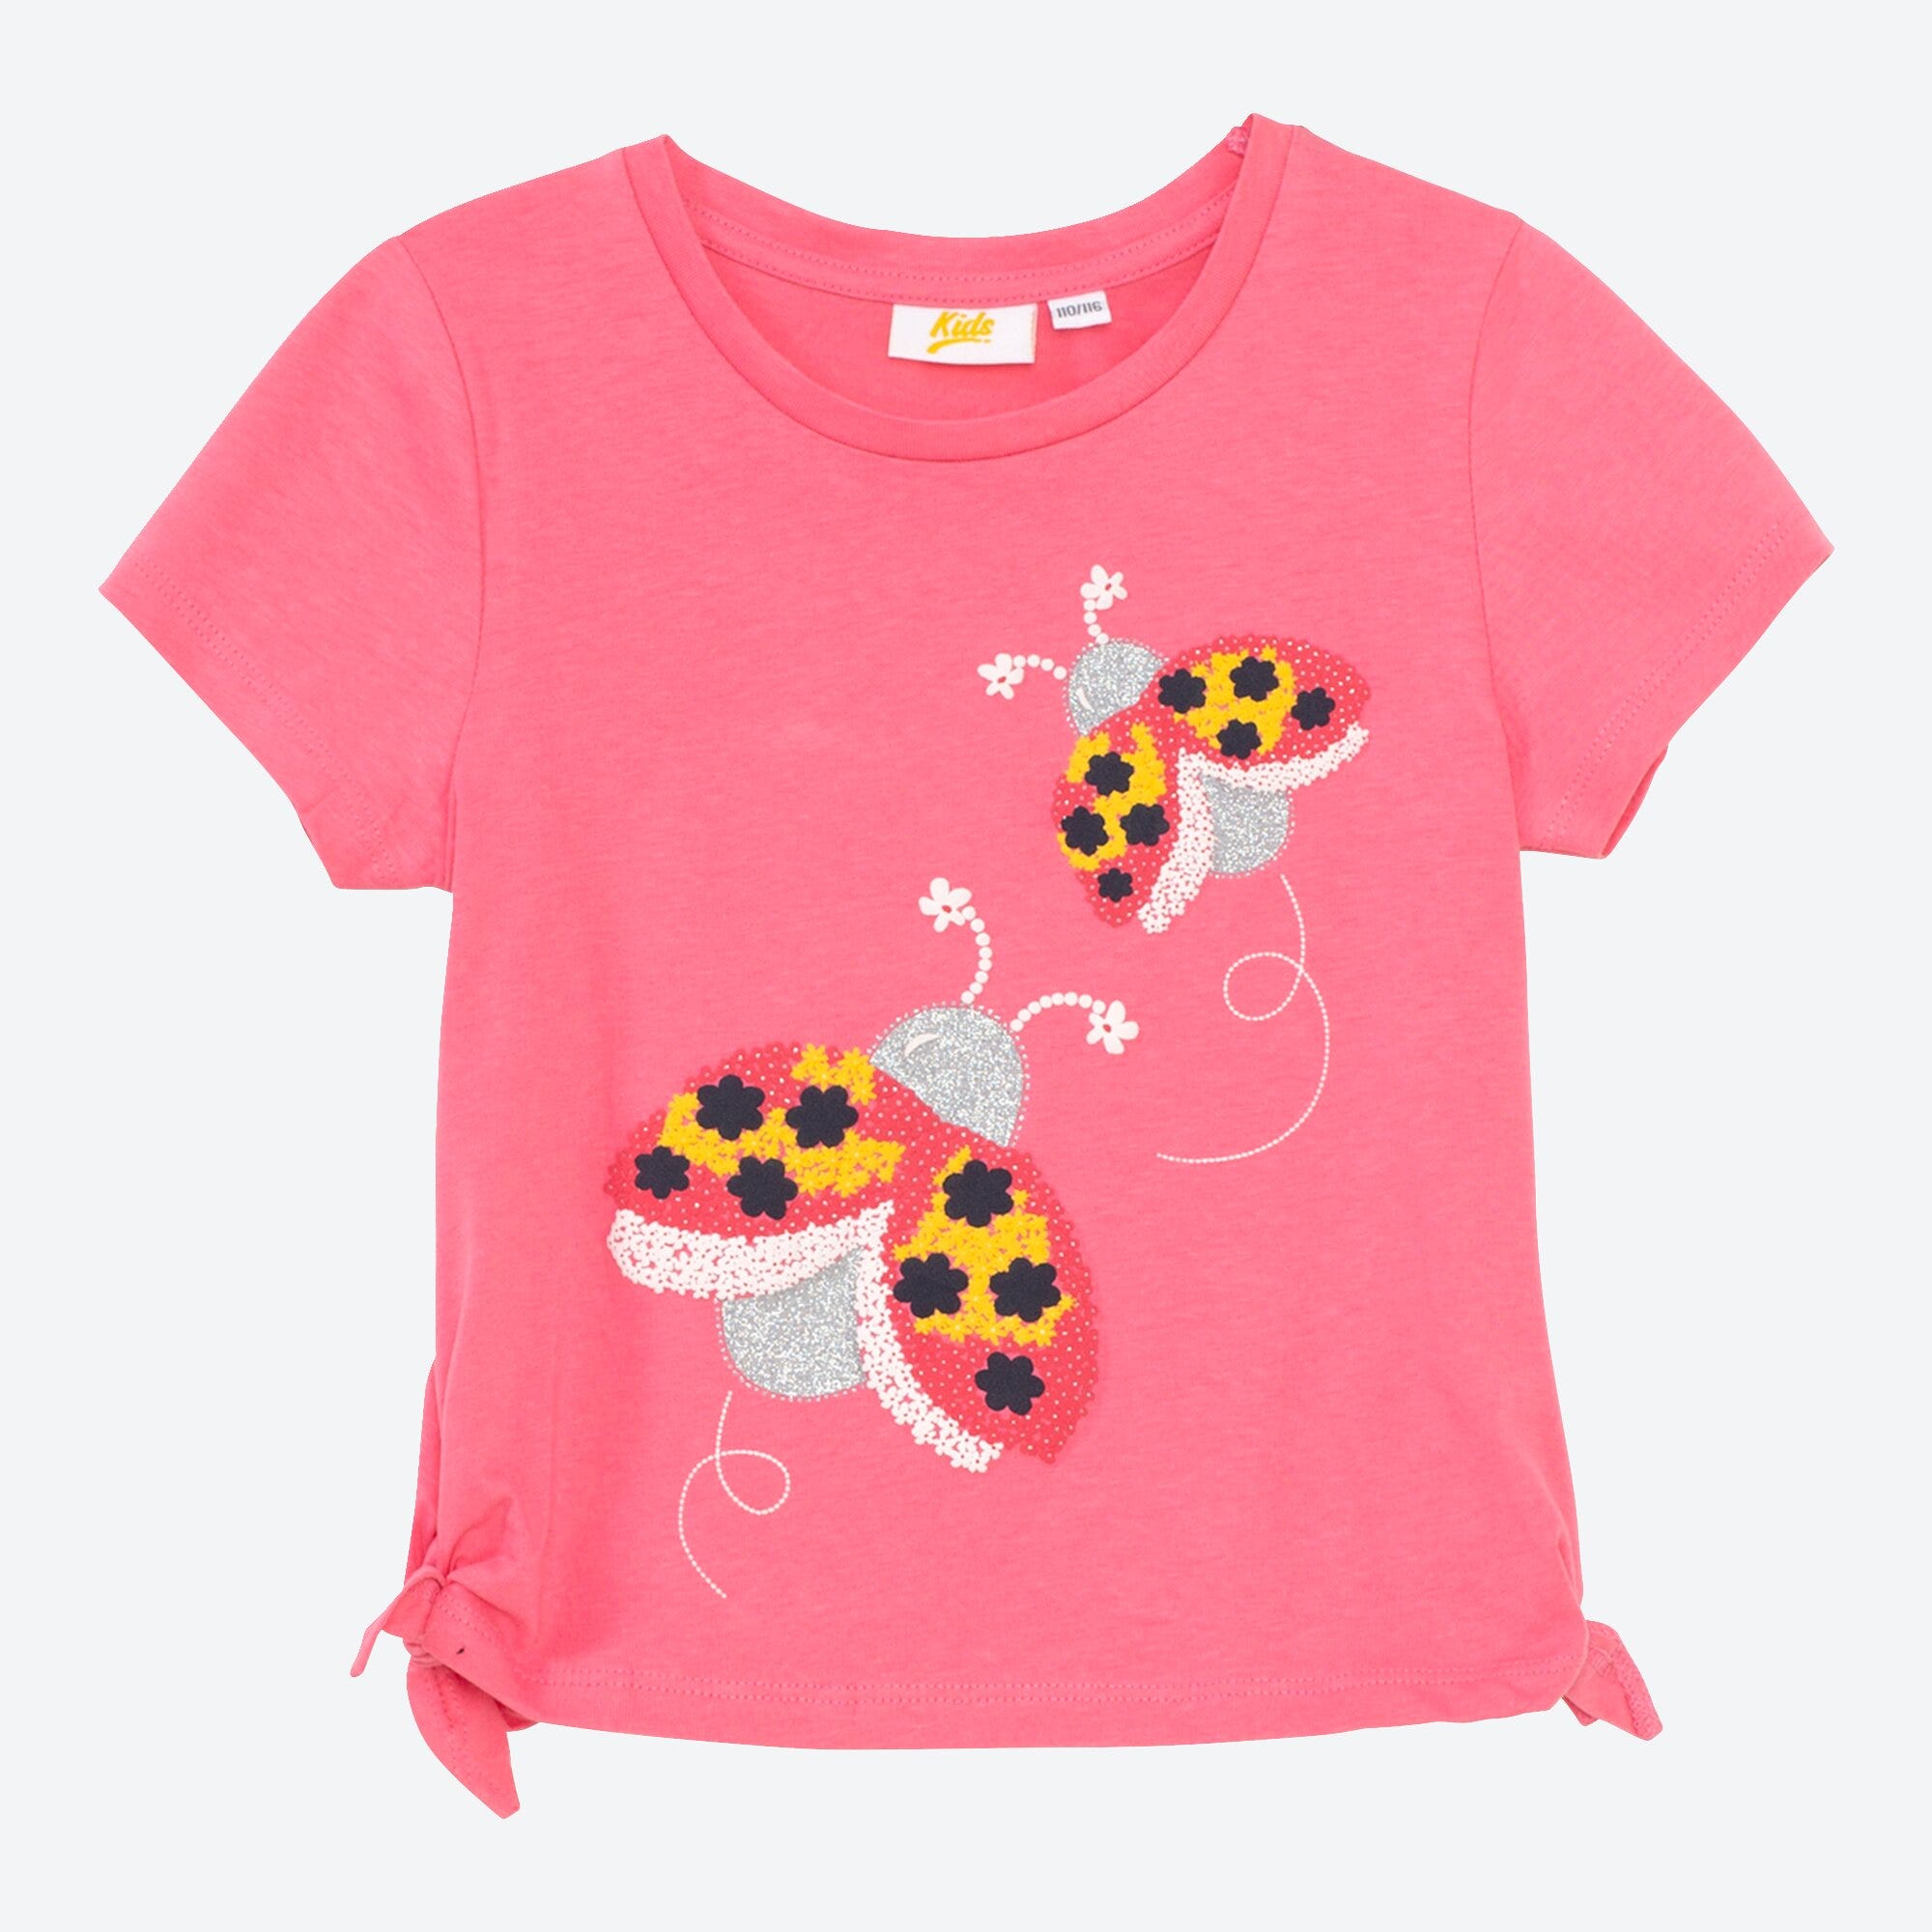 Mädchen-T-Shirt mit Marienkäfer-Design